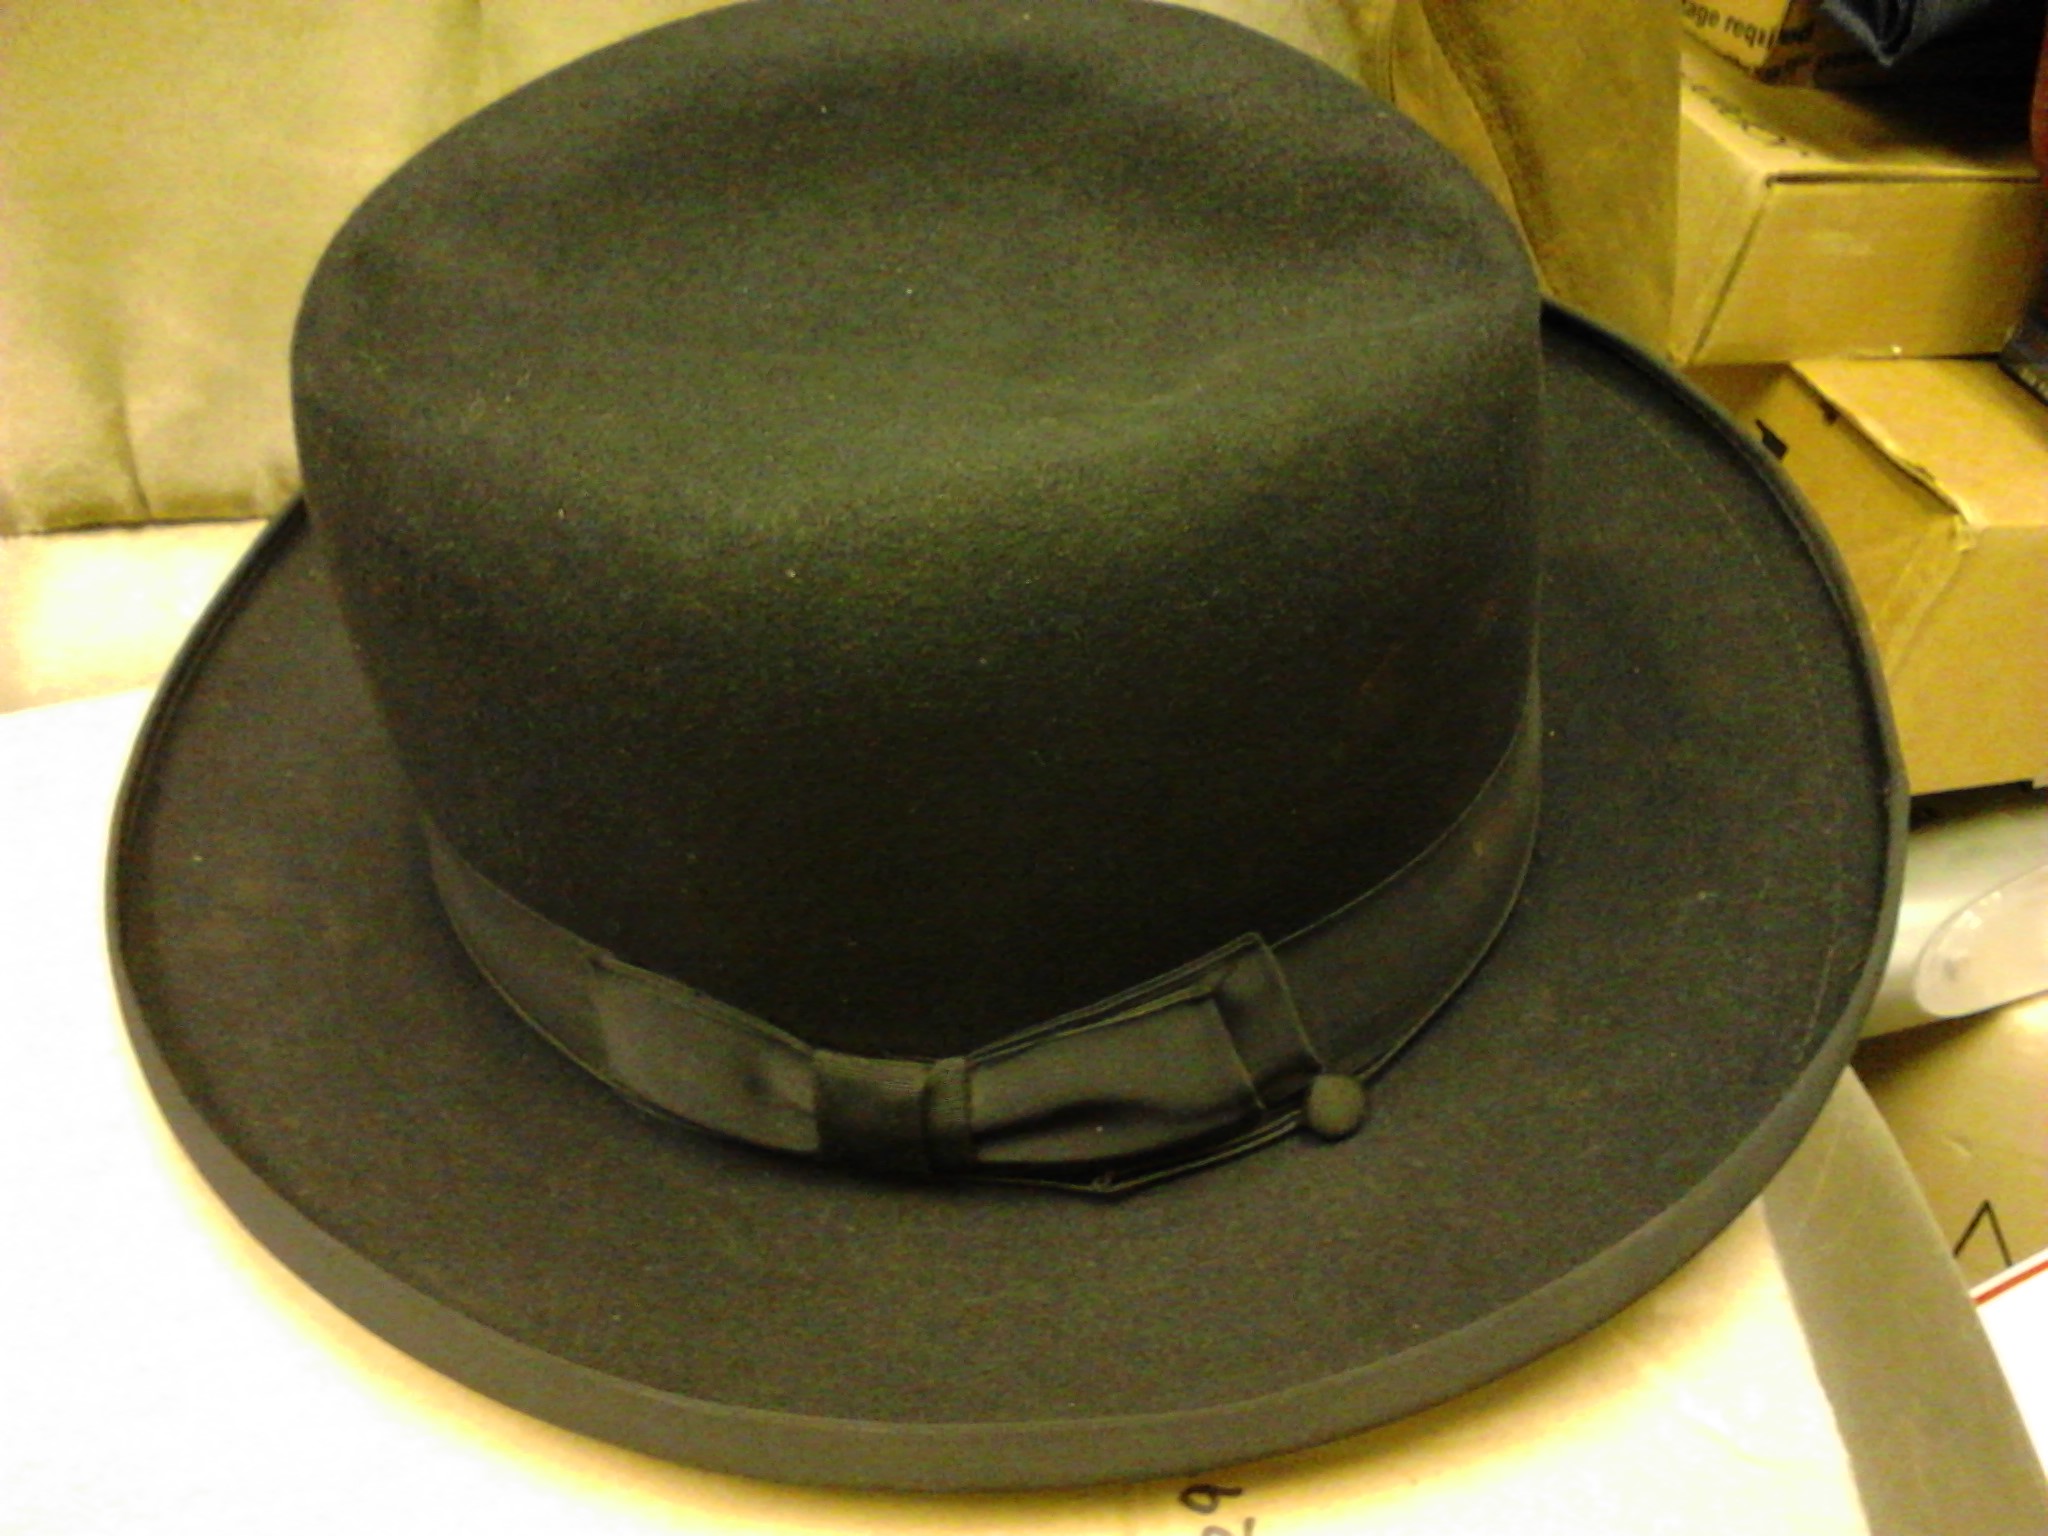 The hat.jpg